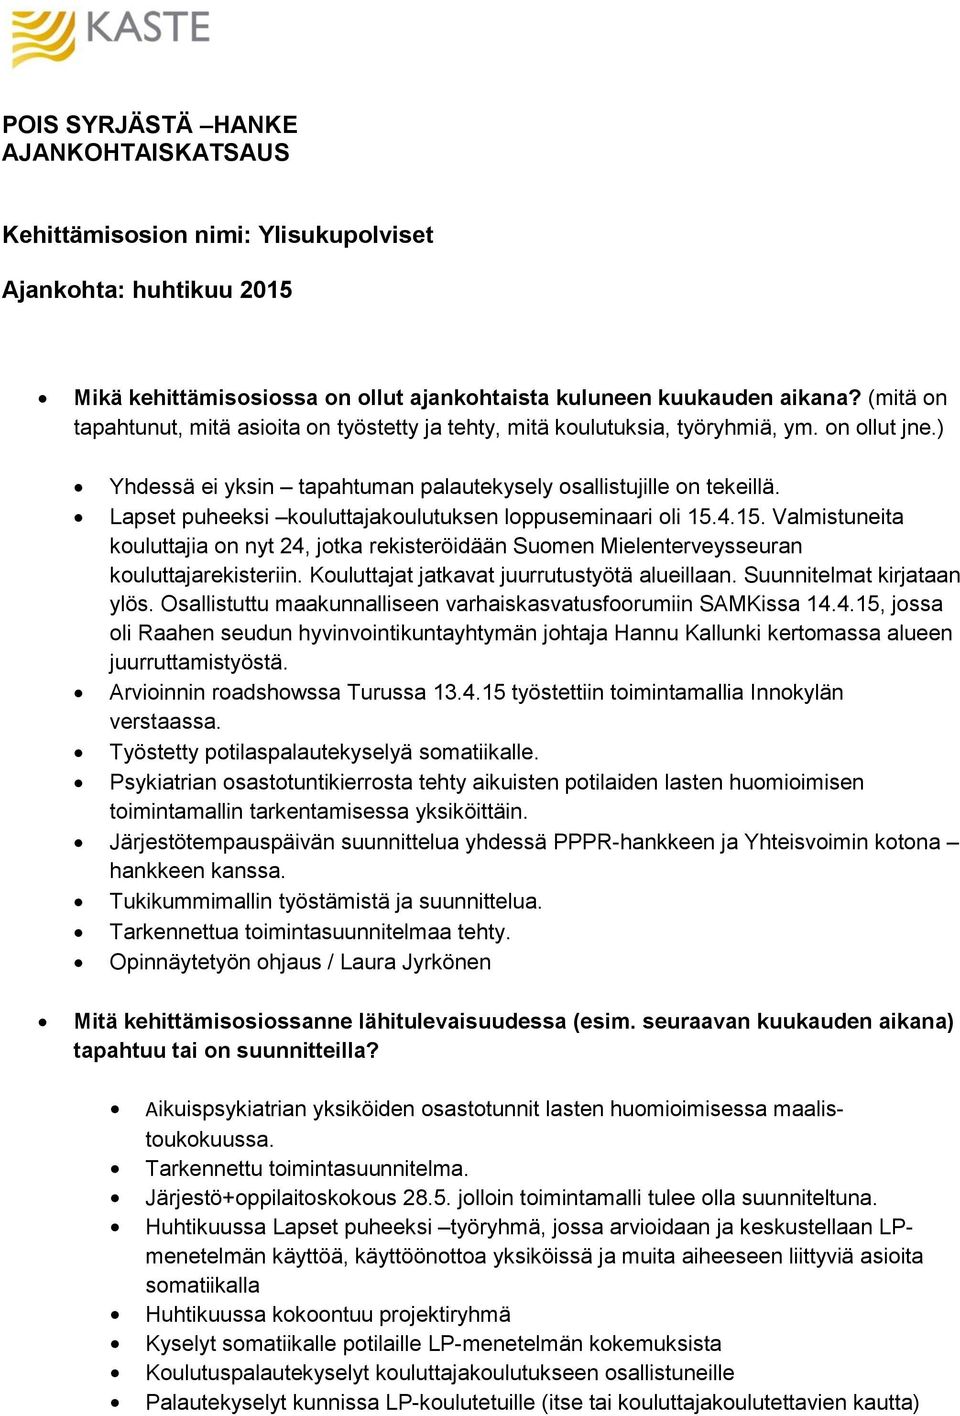 Lapset puheeksi kouluttajakoulutuksen loppuseminaari oli 15.4.15. Valmistuneita kouluttajia on nyt 24, jotka rekisteröidään Suomen Mielenterveysseuran kouluttajarekisteriin.